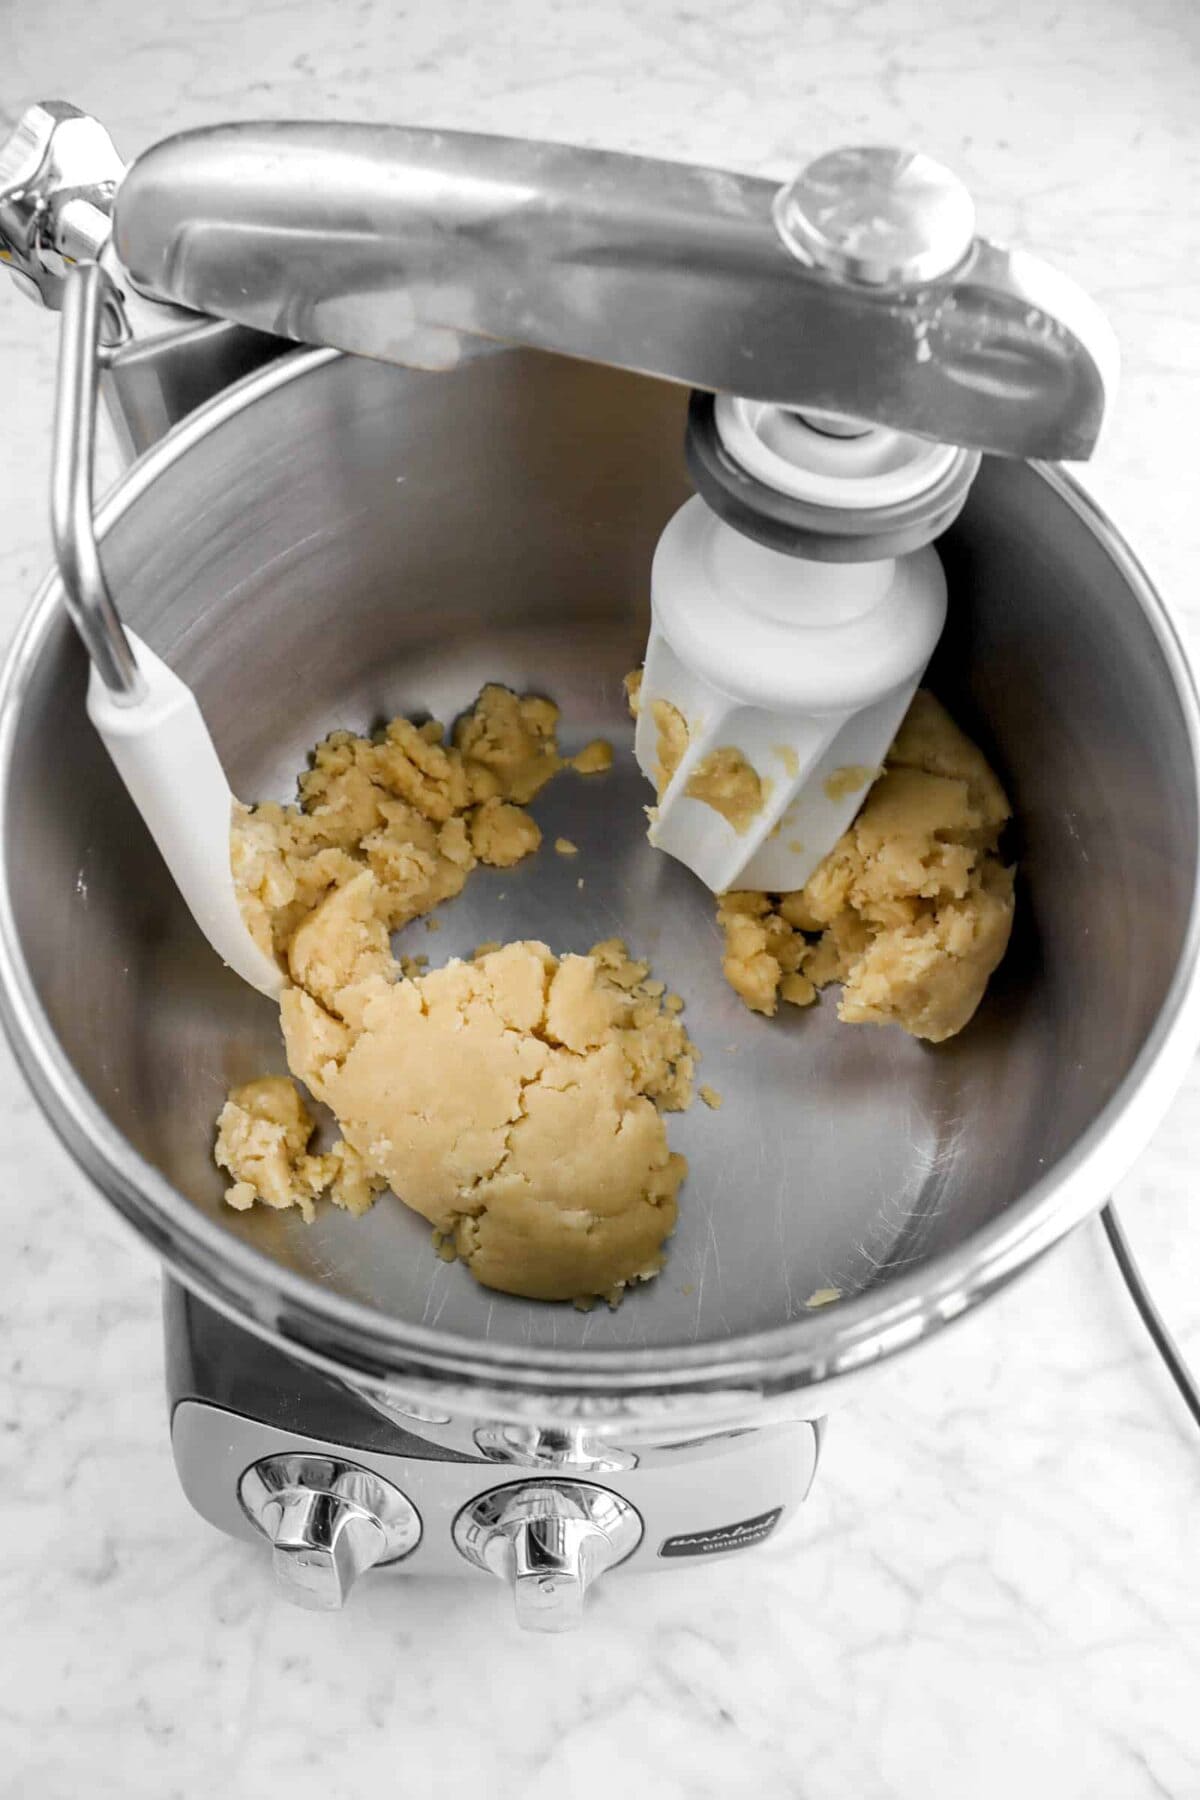 rough dough in mixer